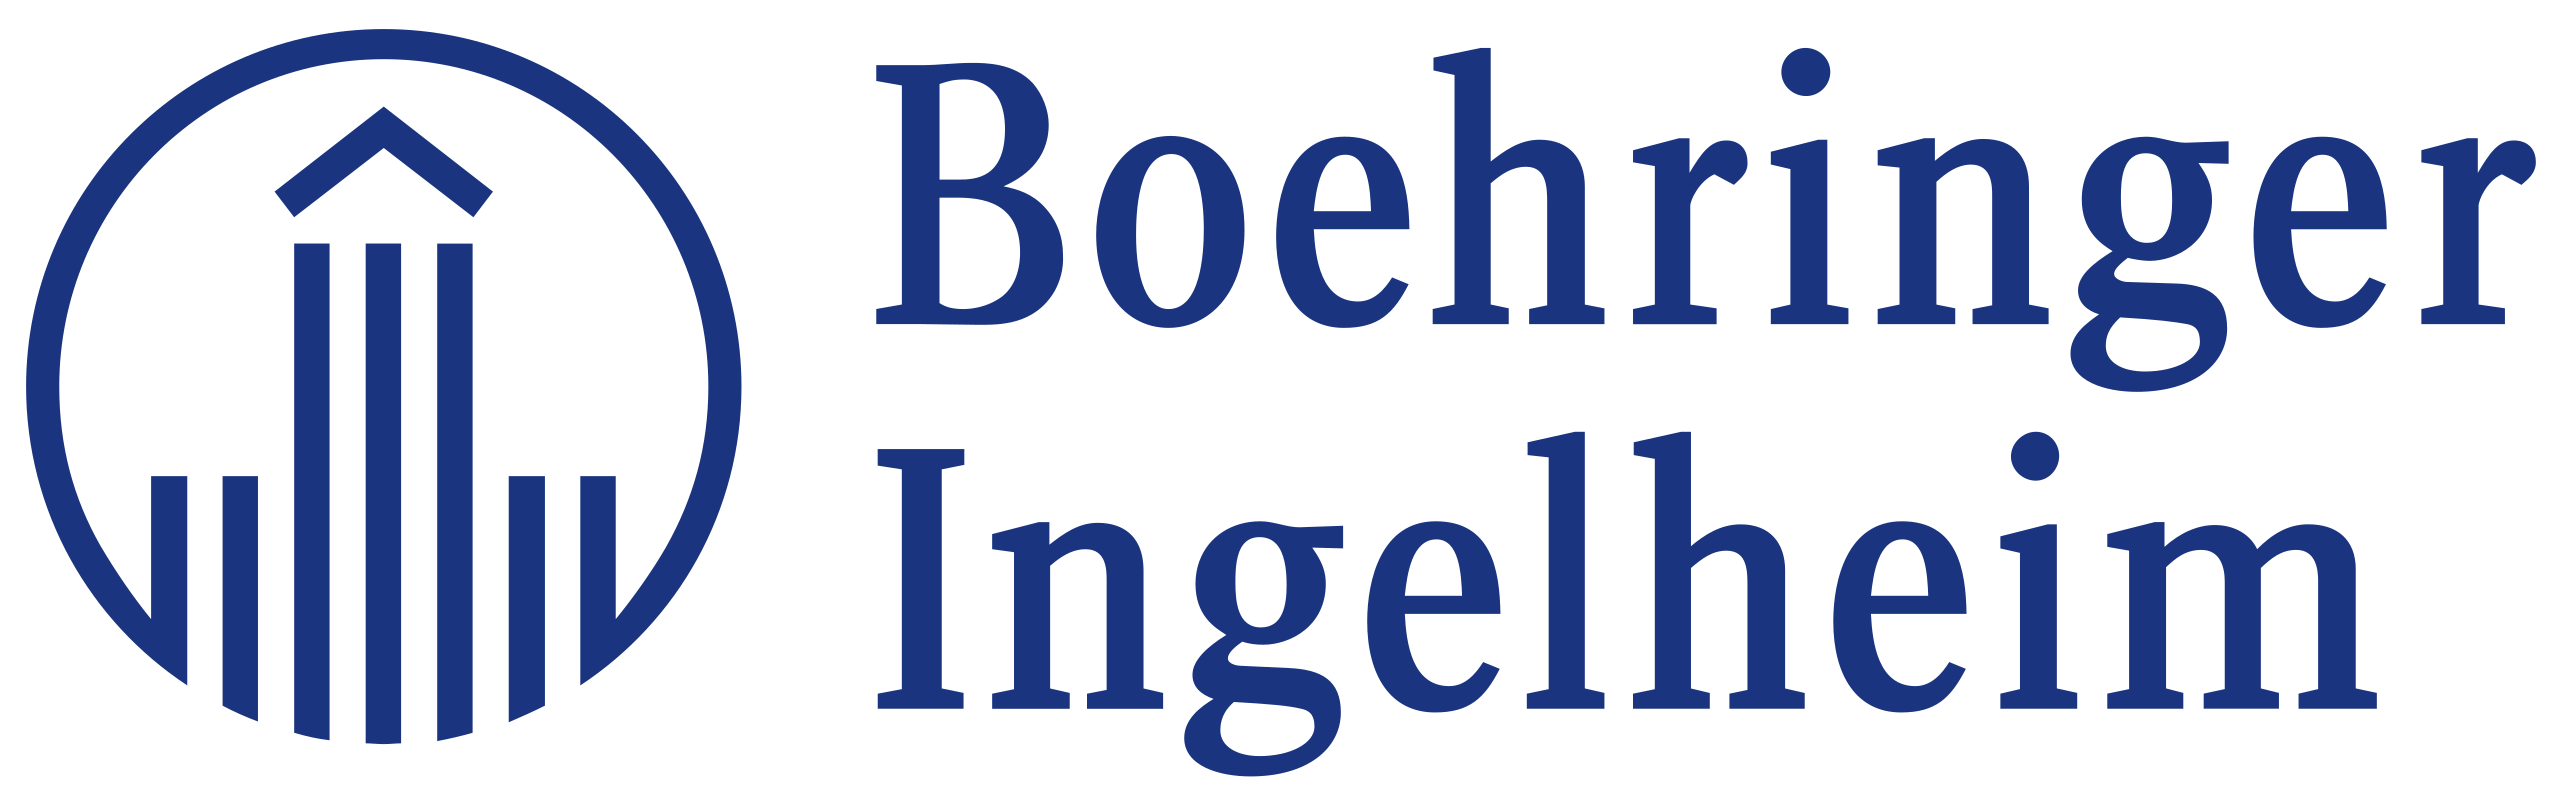 Boehringer Ingelheim RCV GmbH& Co KG